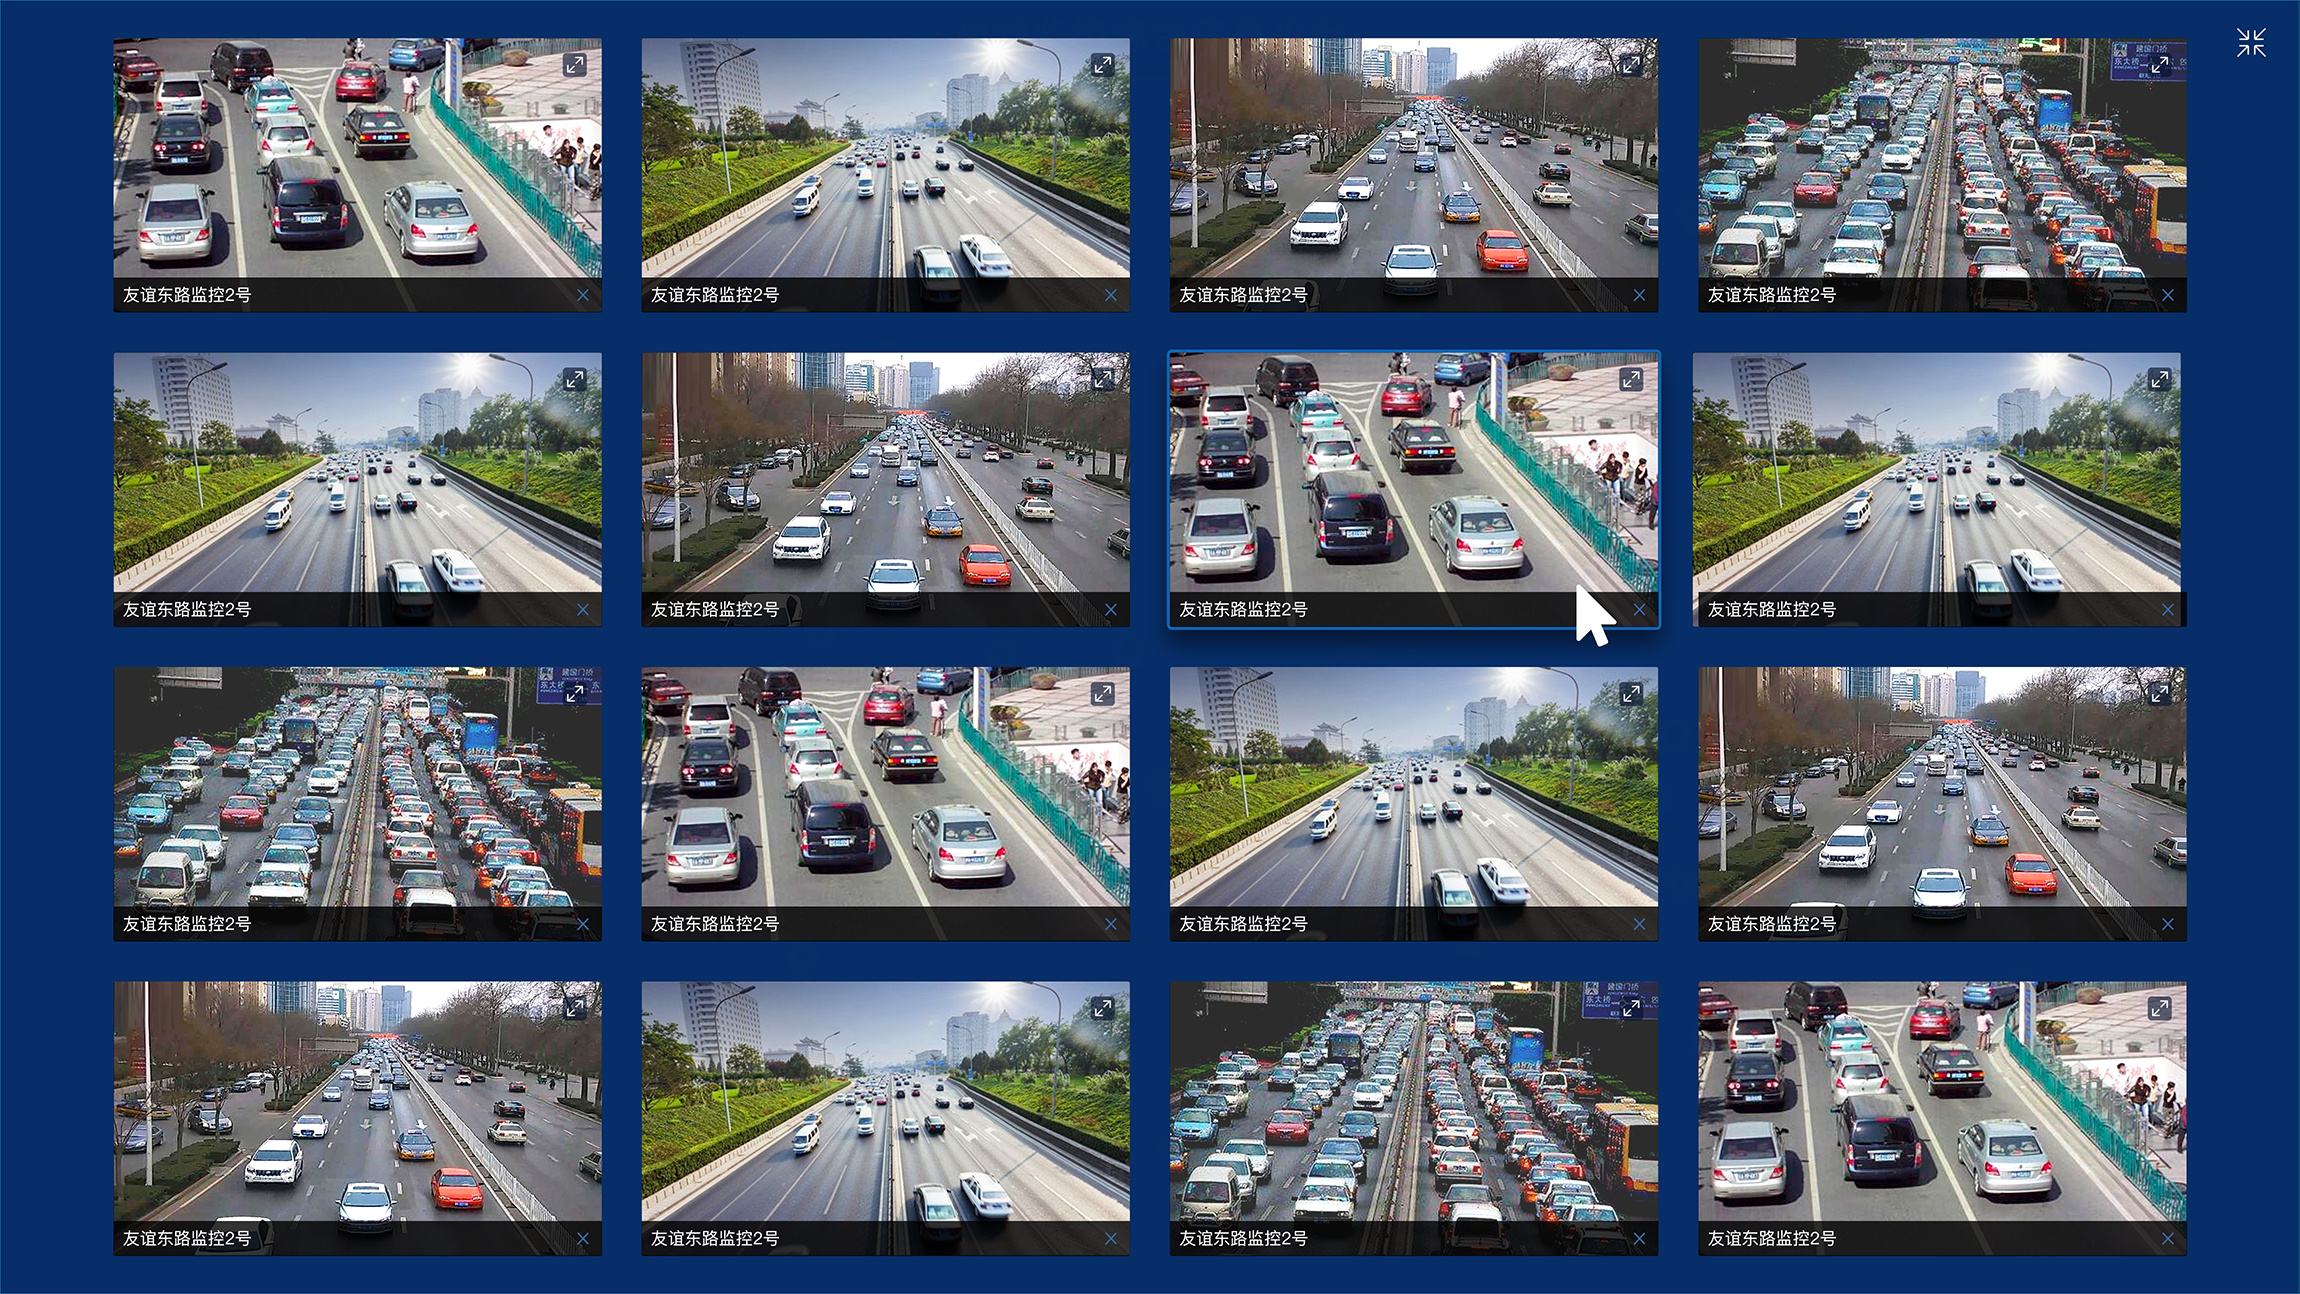 哪一年哪个城市率先使用公路视频监控？ (掌握公路交通的关键环节)